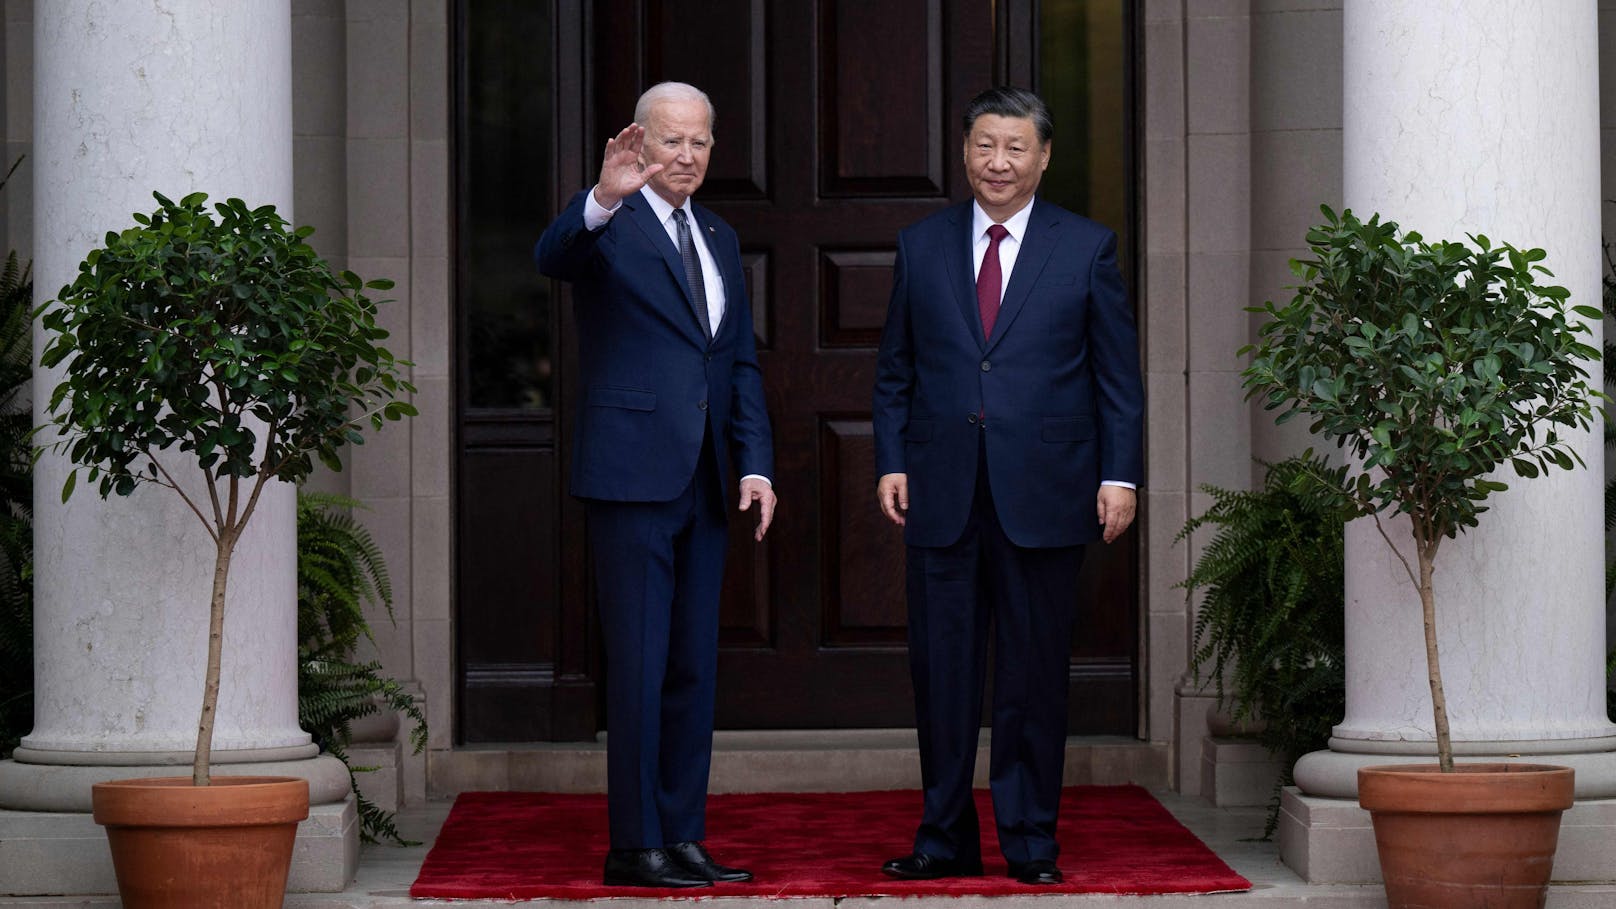 Eklat nach Treffen – Biden nennt Xi einen Diktator